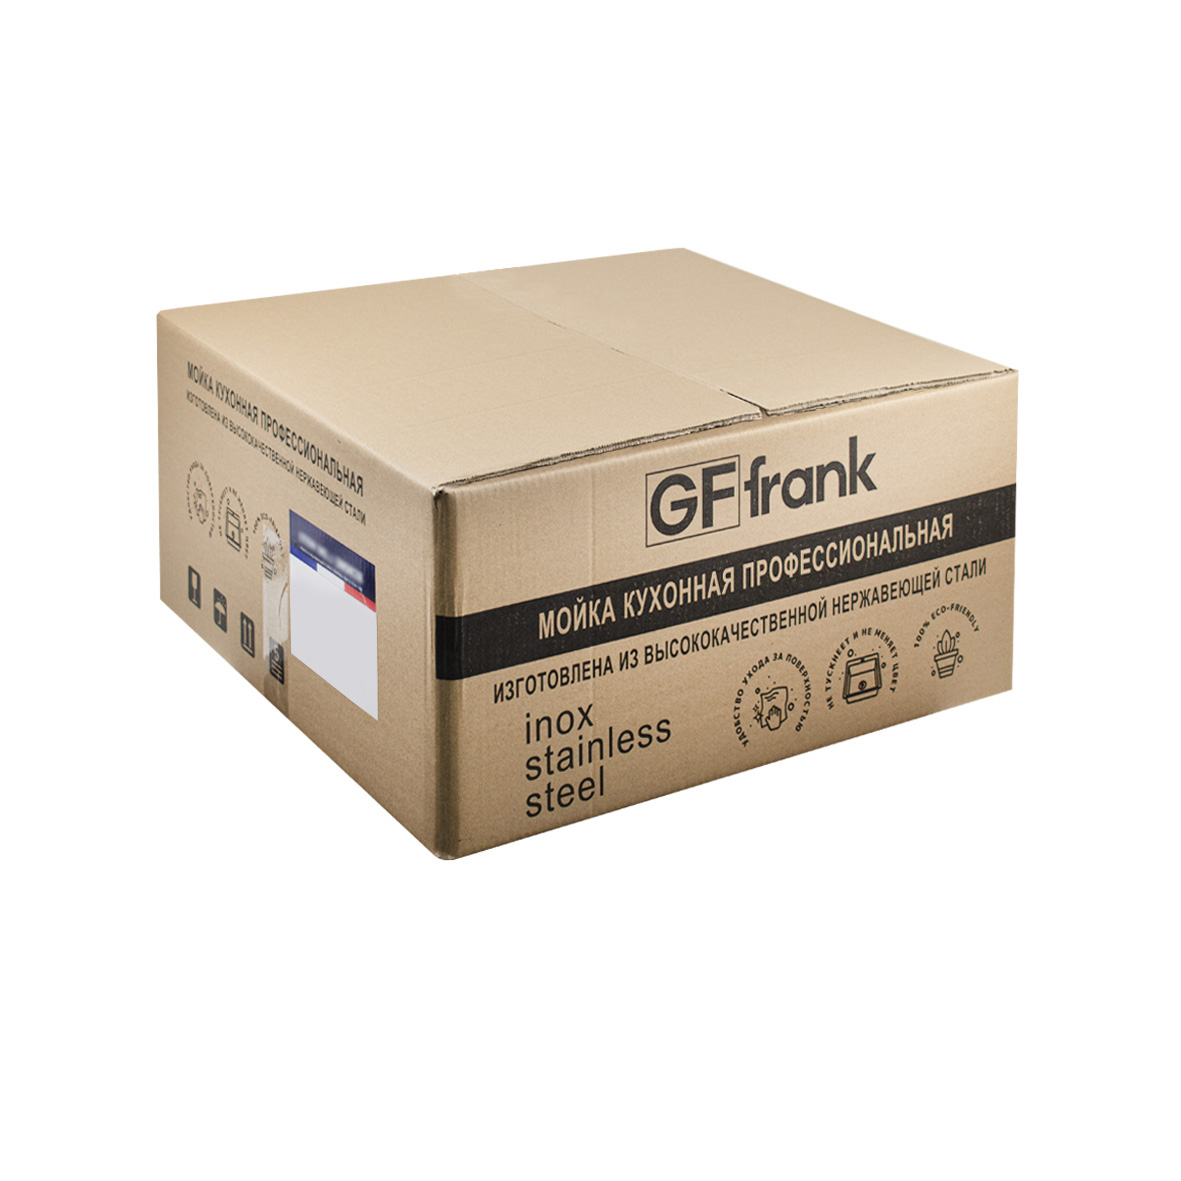 GFfrank - Мойка врезная 60х50 см цвет матовое золото, толщина 2,0 х 0,6 мм, глубина 200 мм + большой сифон с переливом